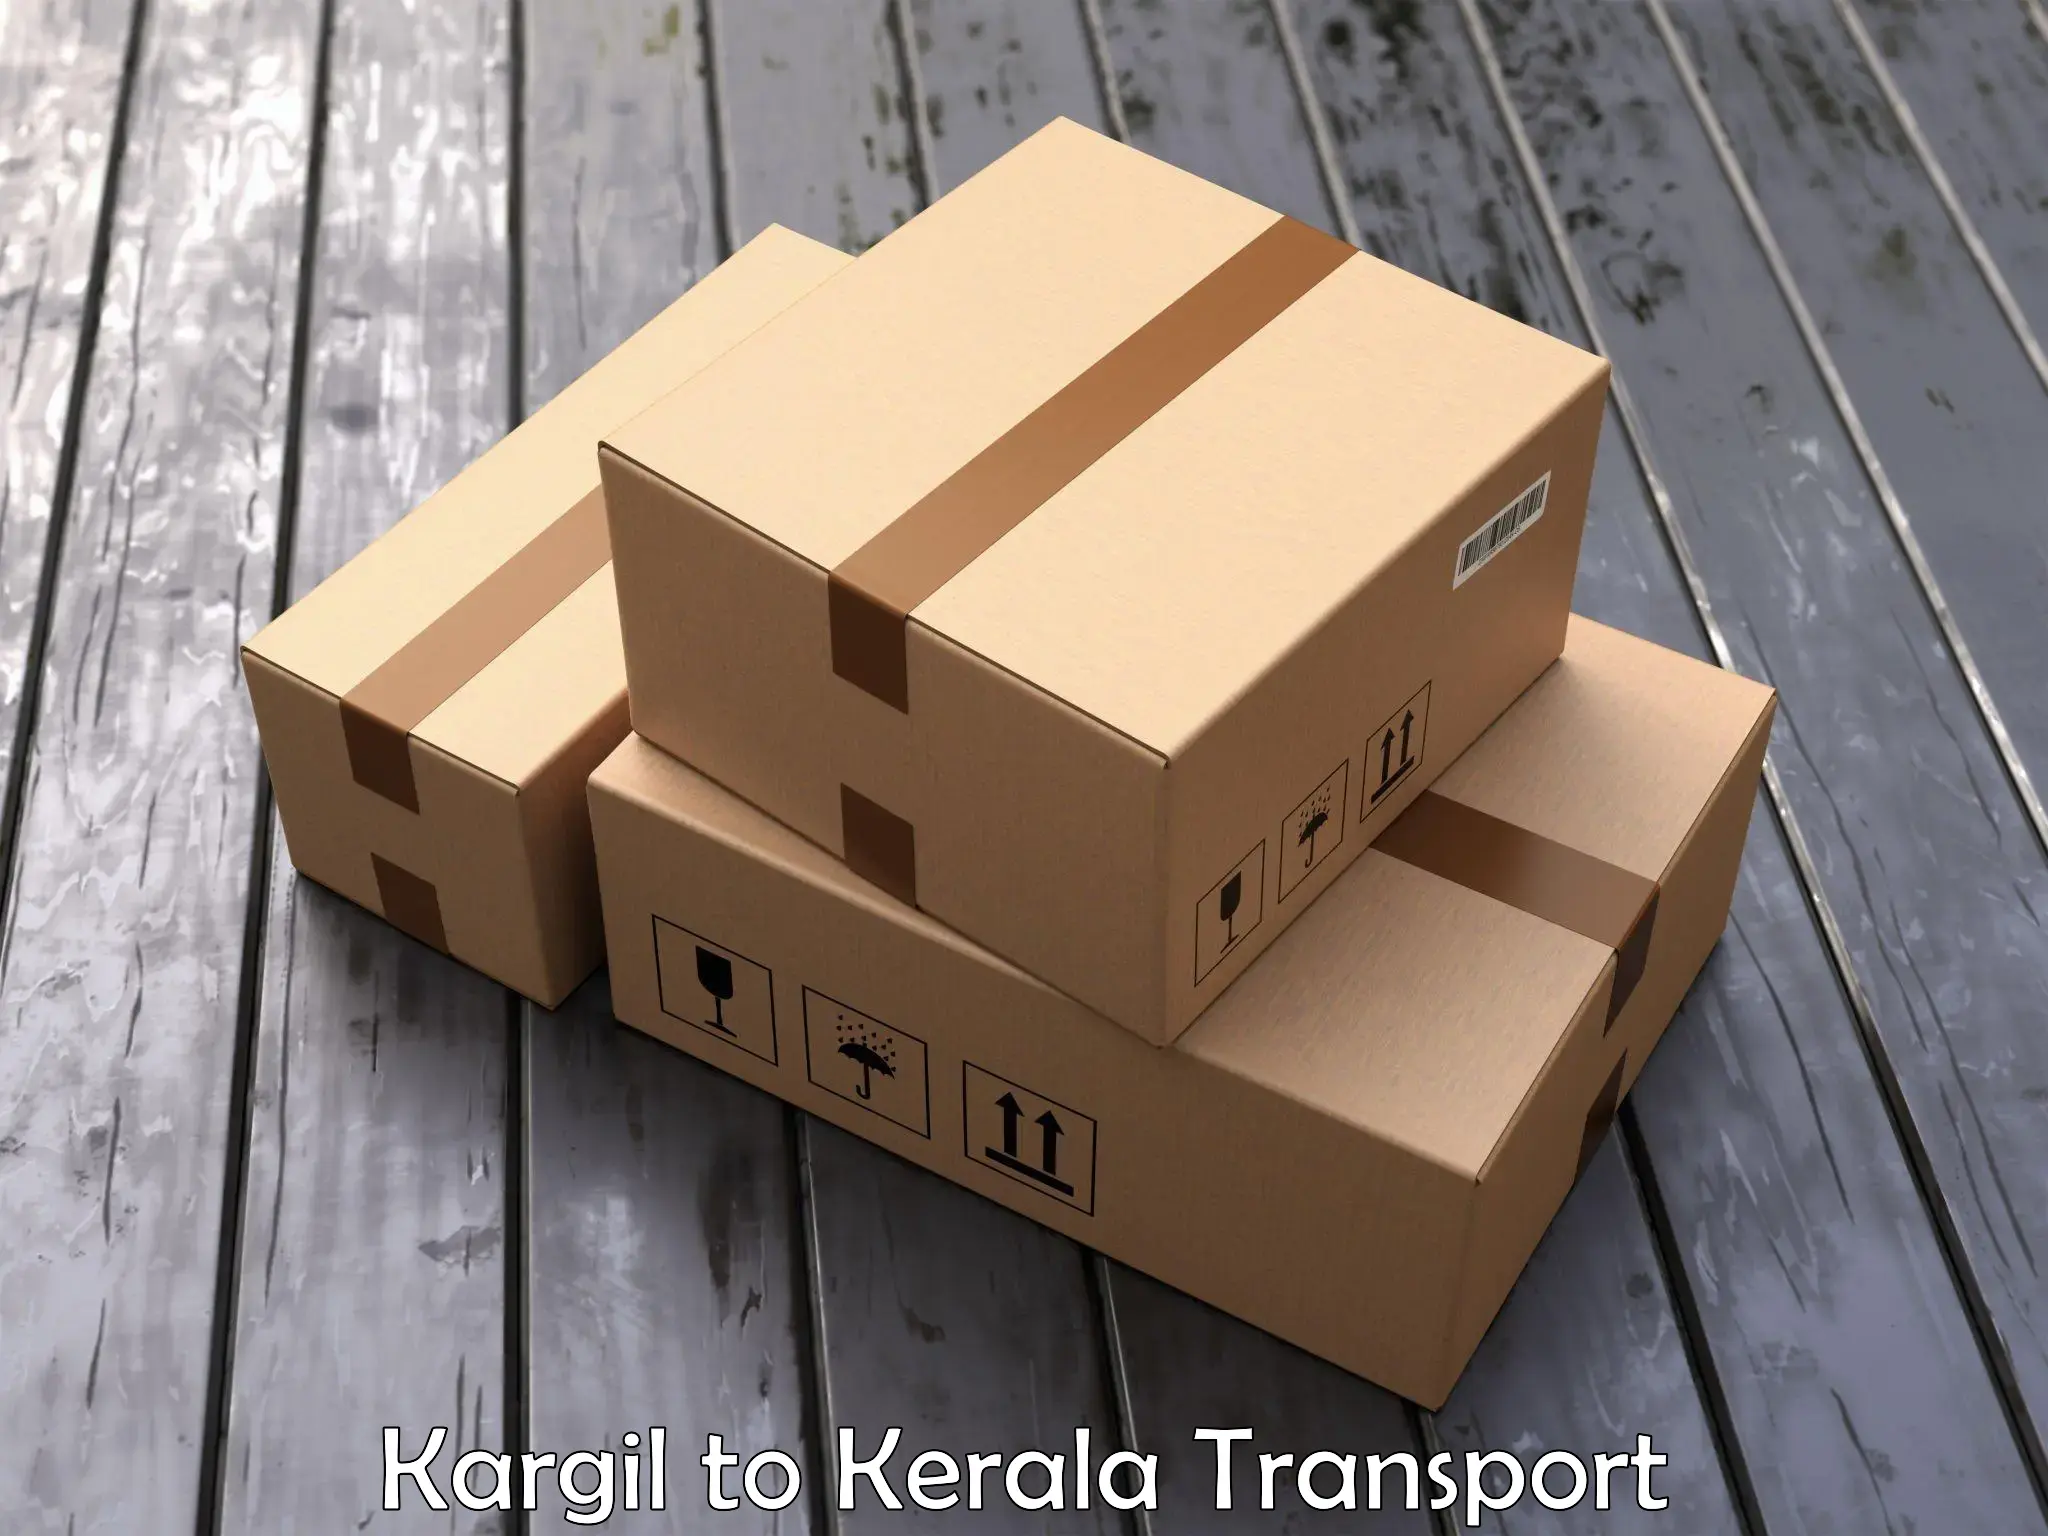 Parcel transport services Kargil to Valanchery